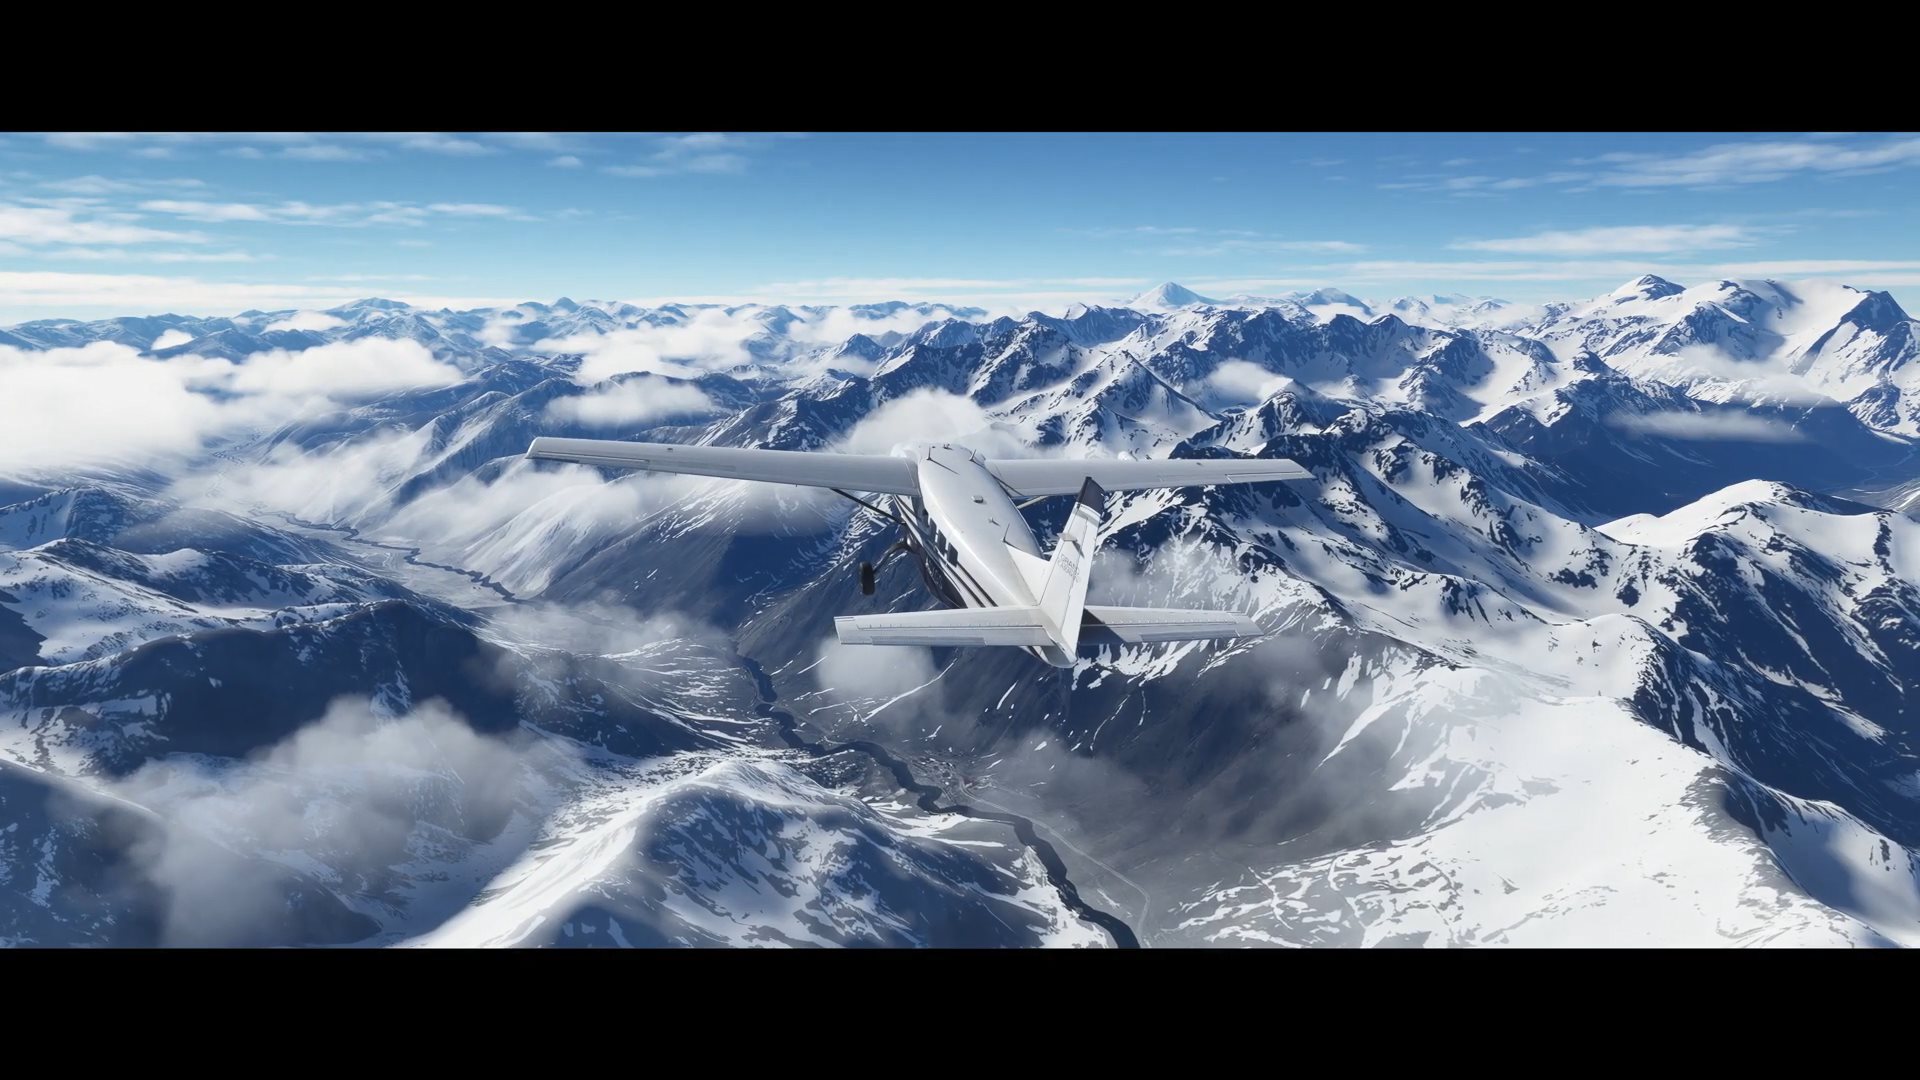 《微软飞行模拟》加入冰雪天气效果 与现实世界保持一致